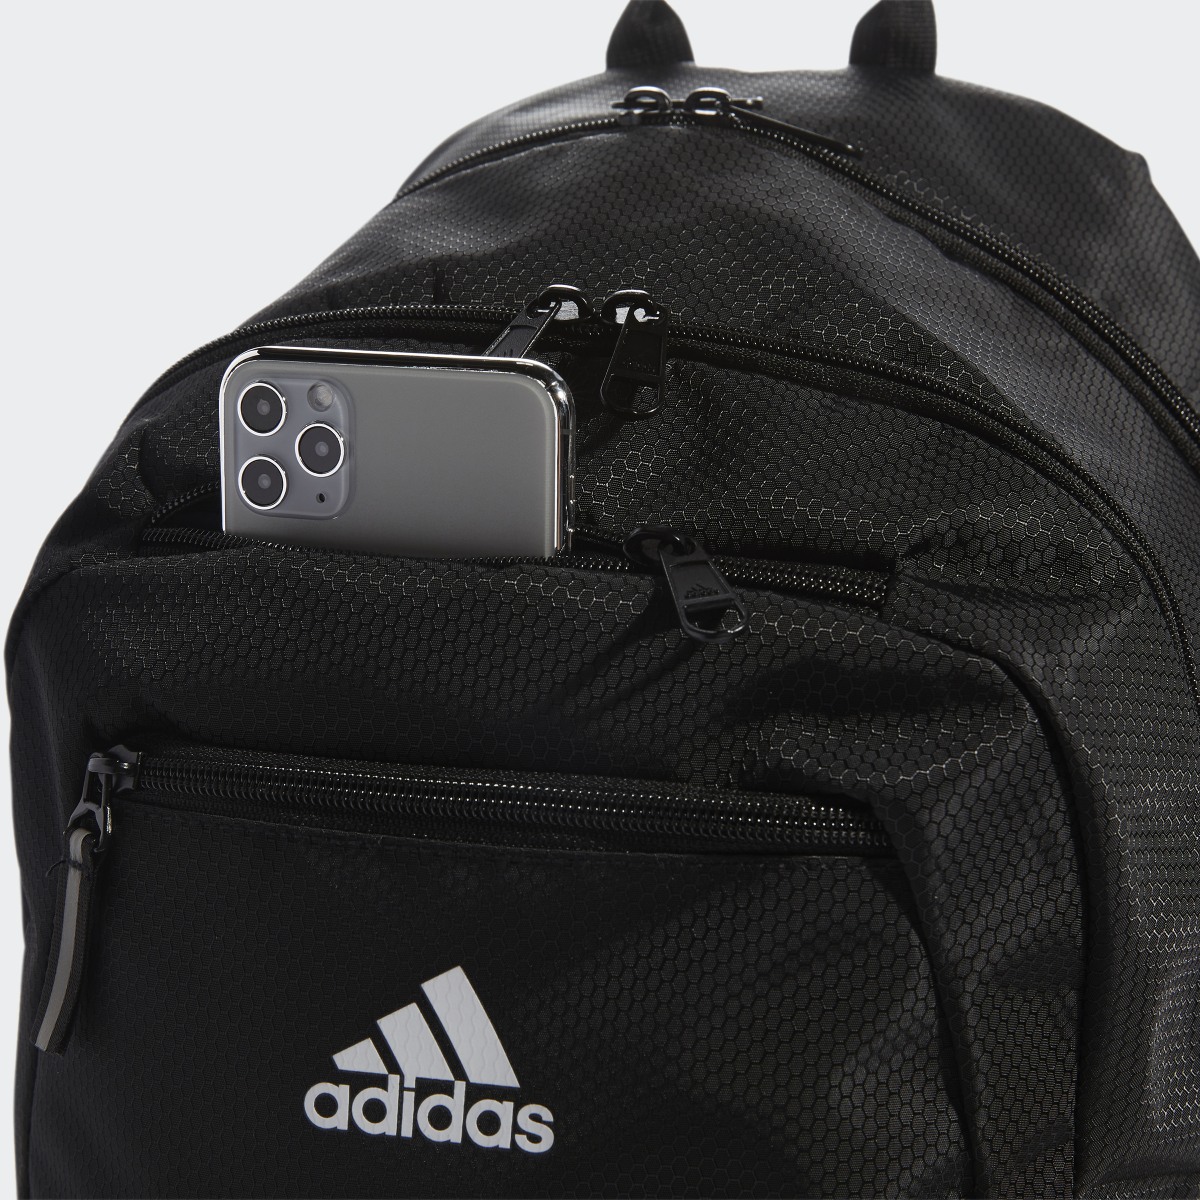 Adidas Foundation 6 Backpack. 6